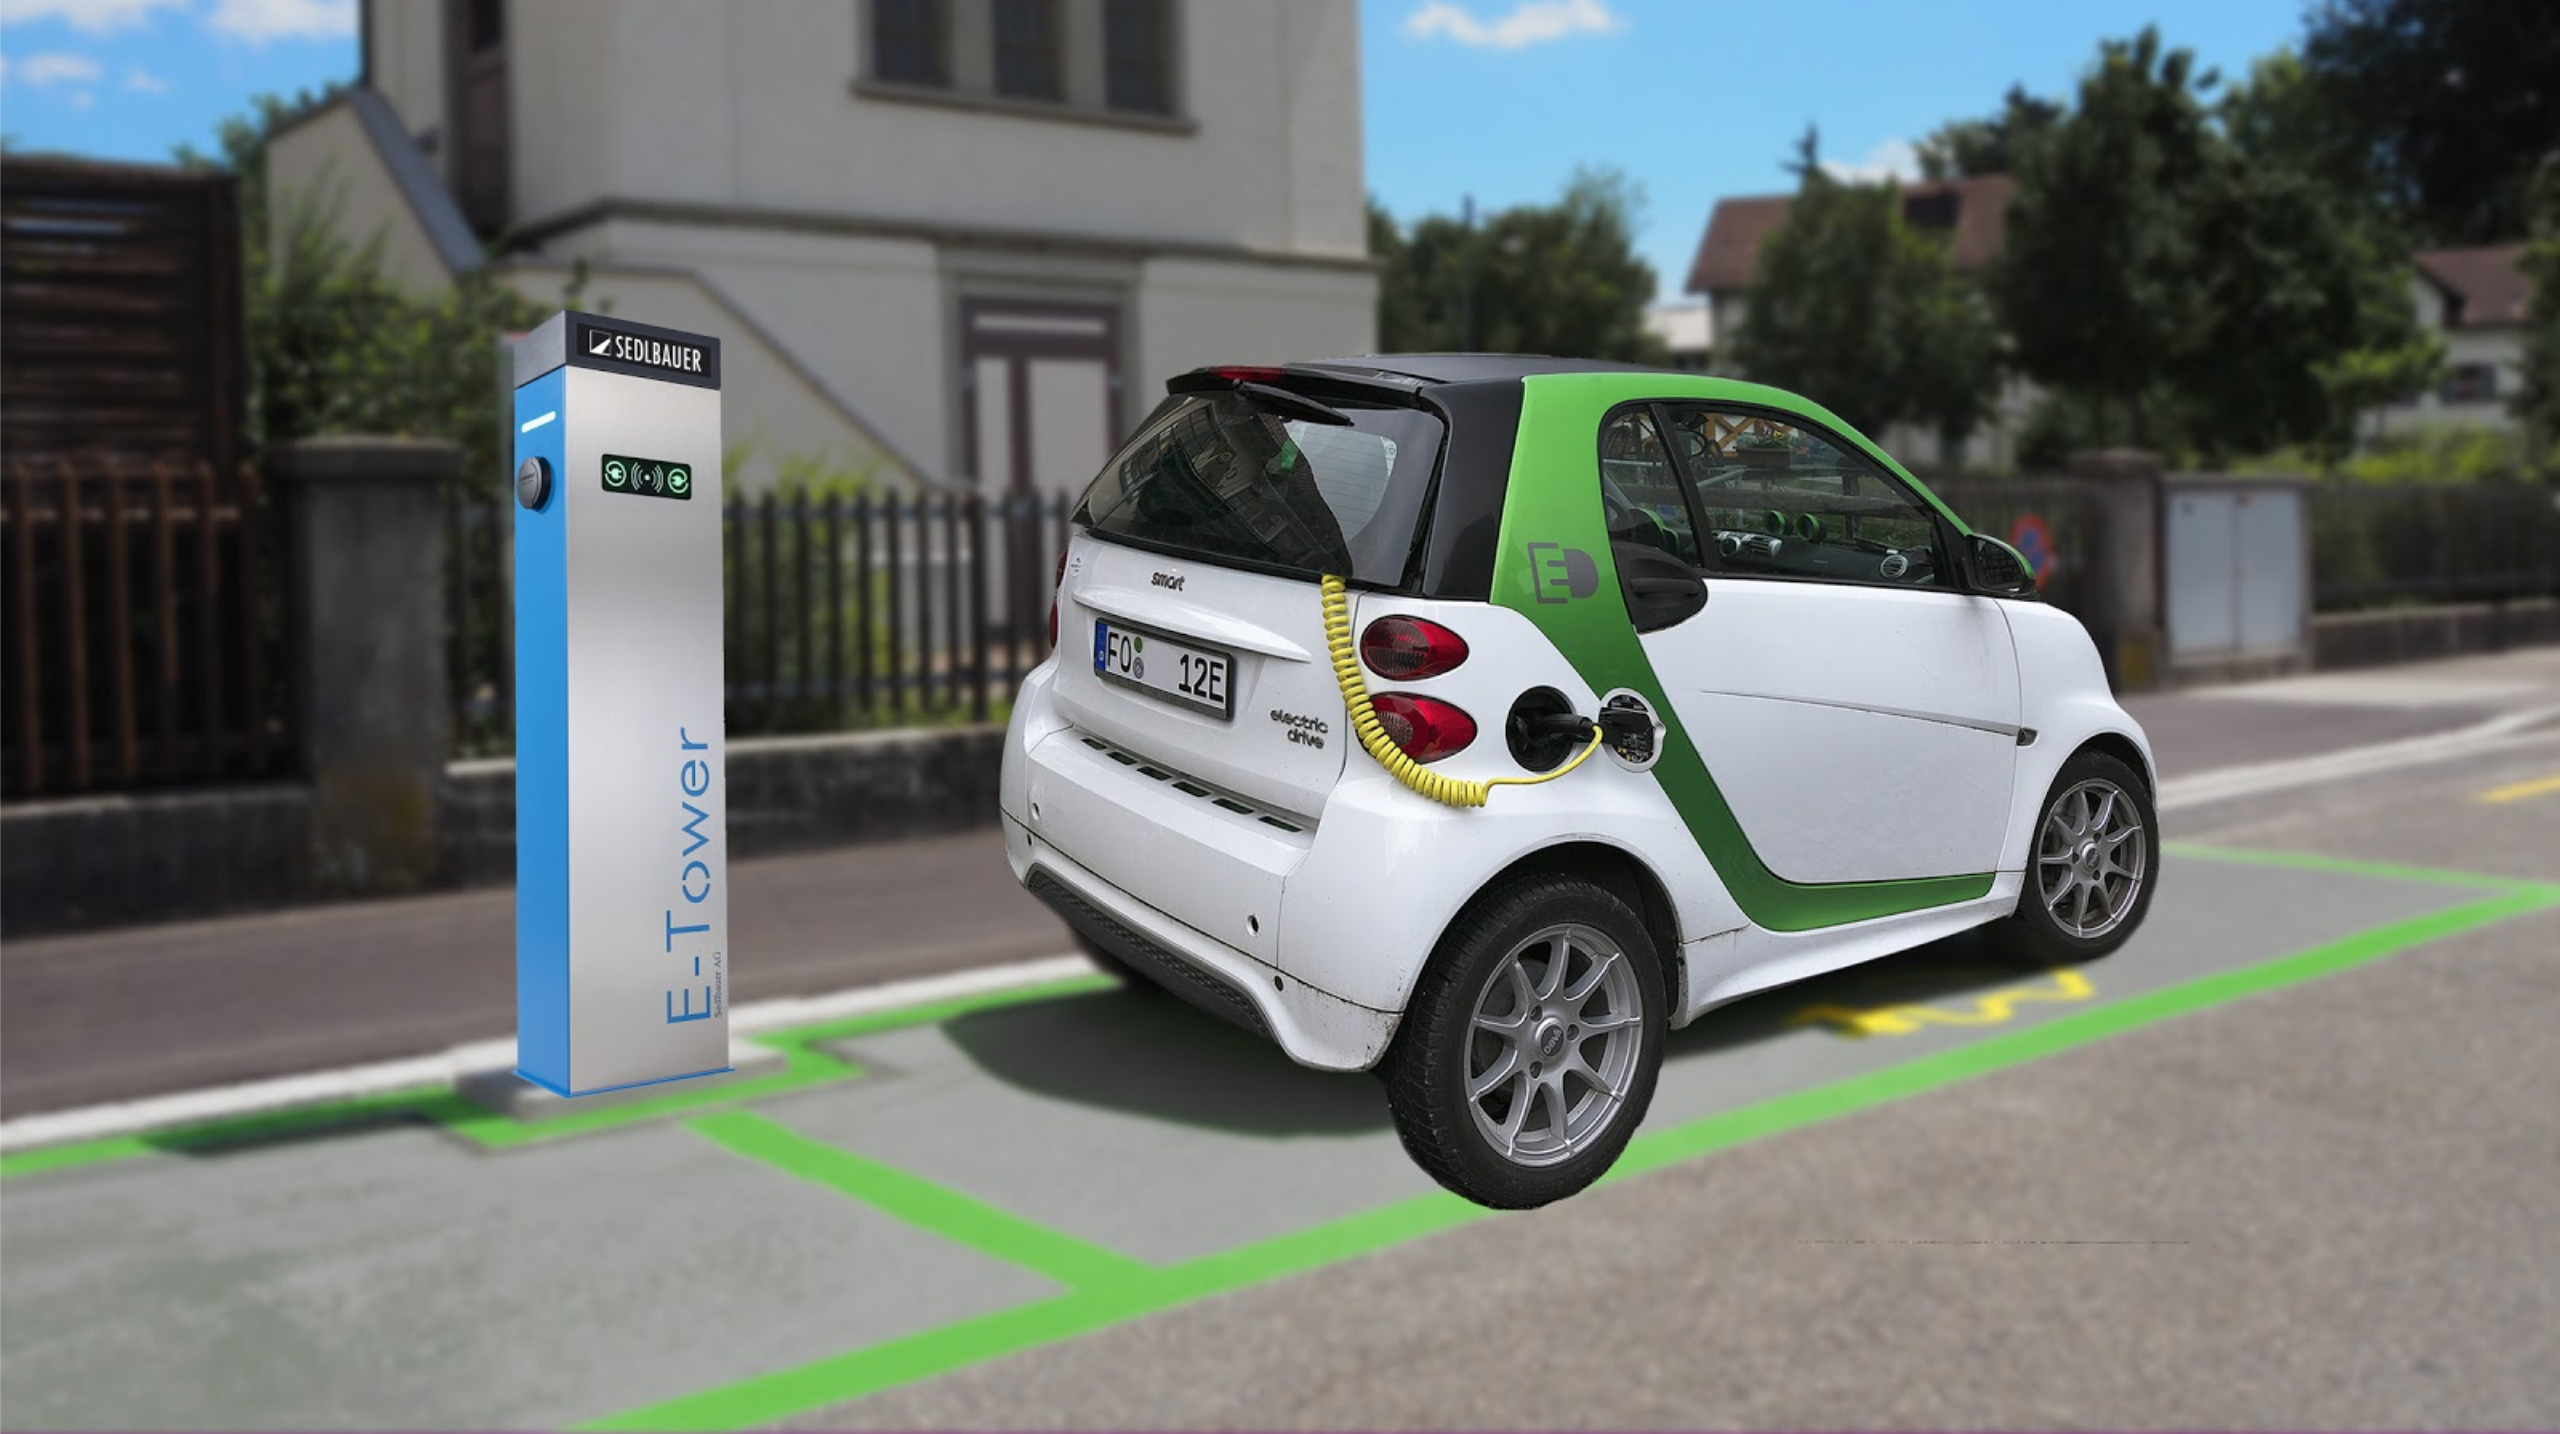 Einführung von grünen Zonen für Elektrofahrzeuge (47)